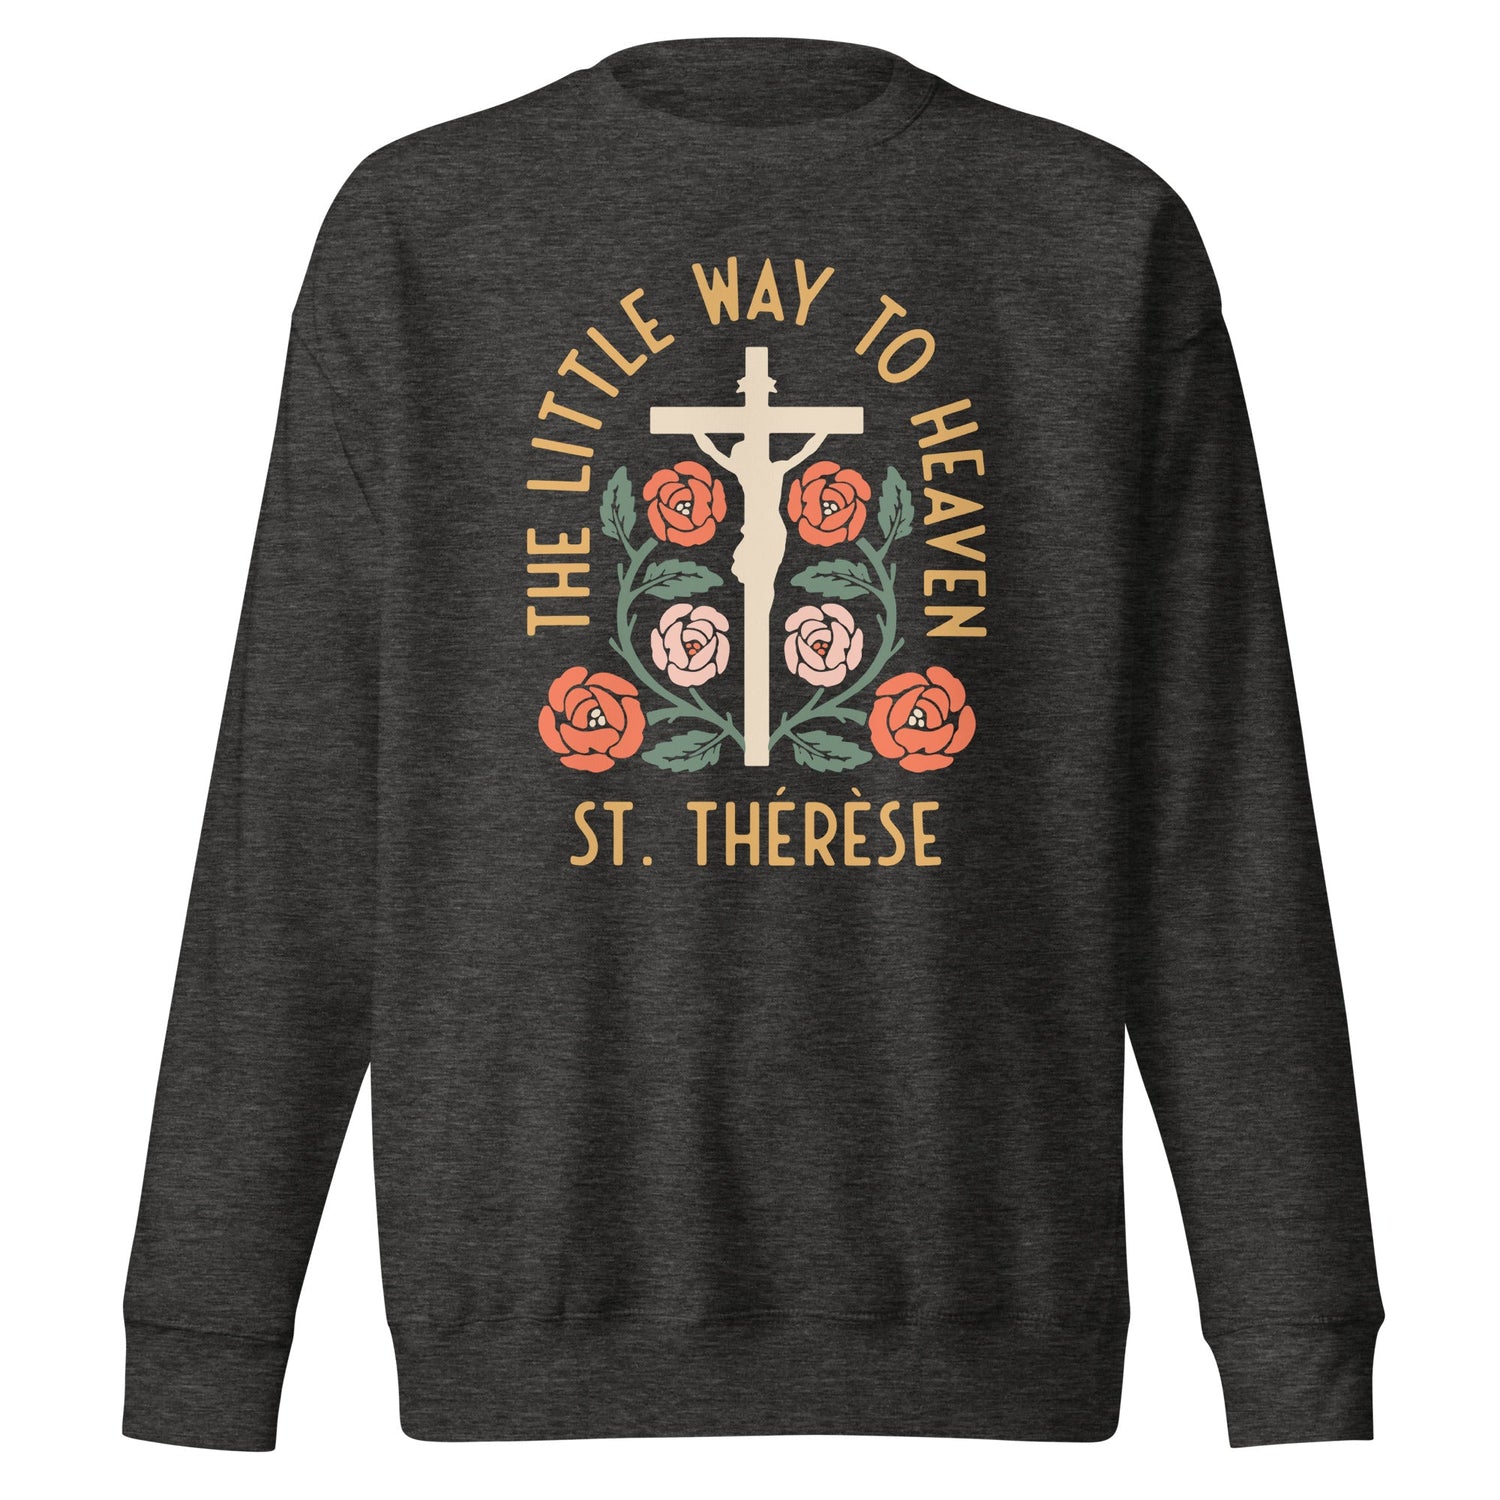 St. Thérèse Crewneck Sweatshirt - Little Way Design Co.